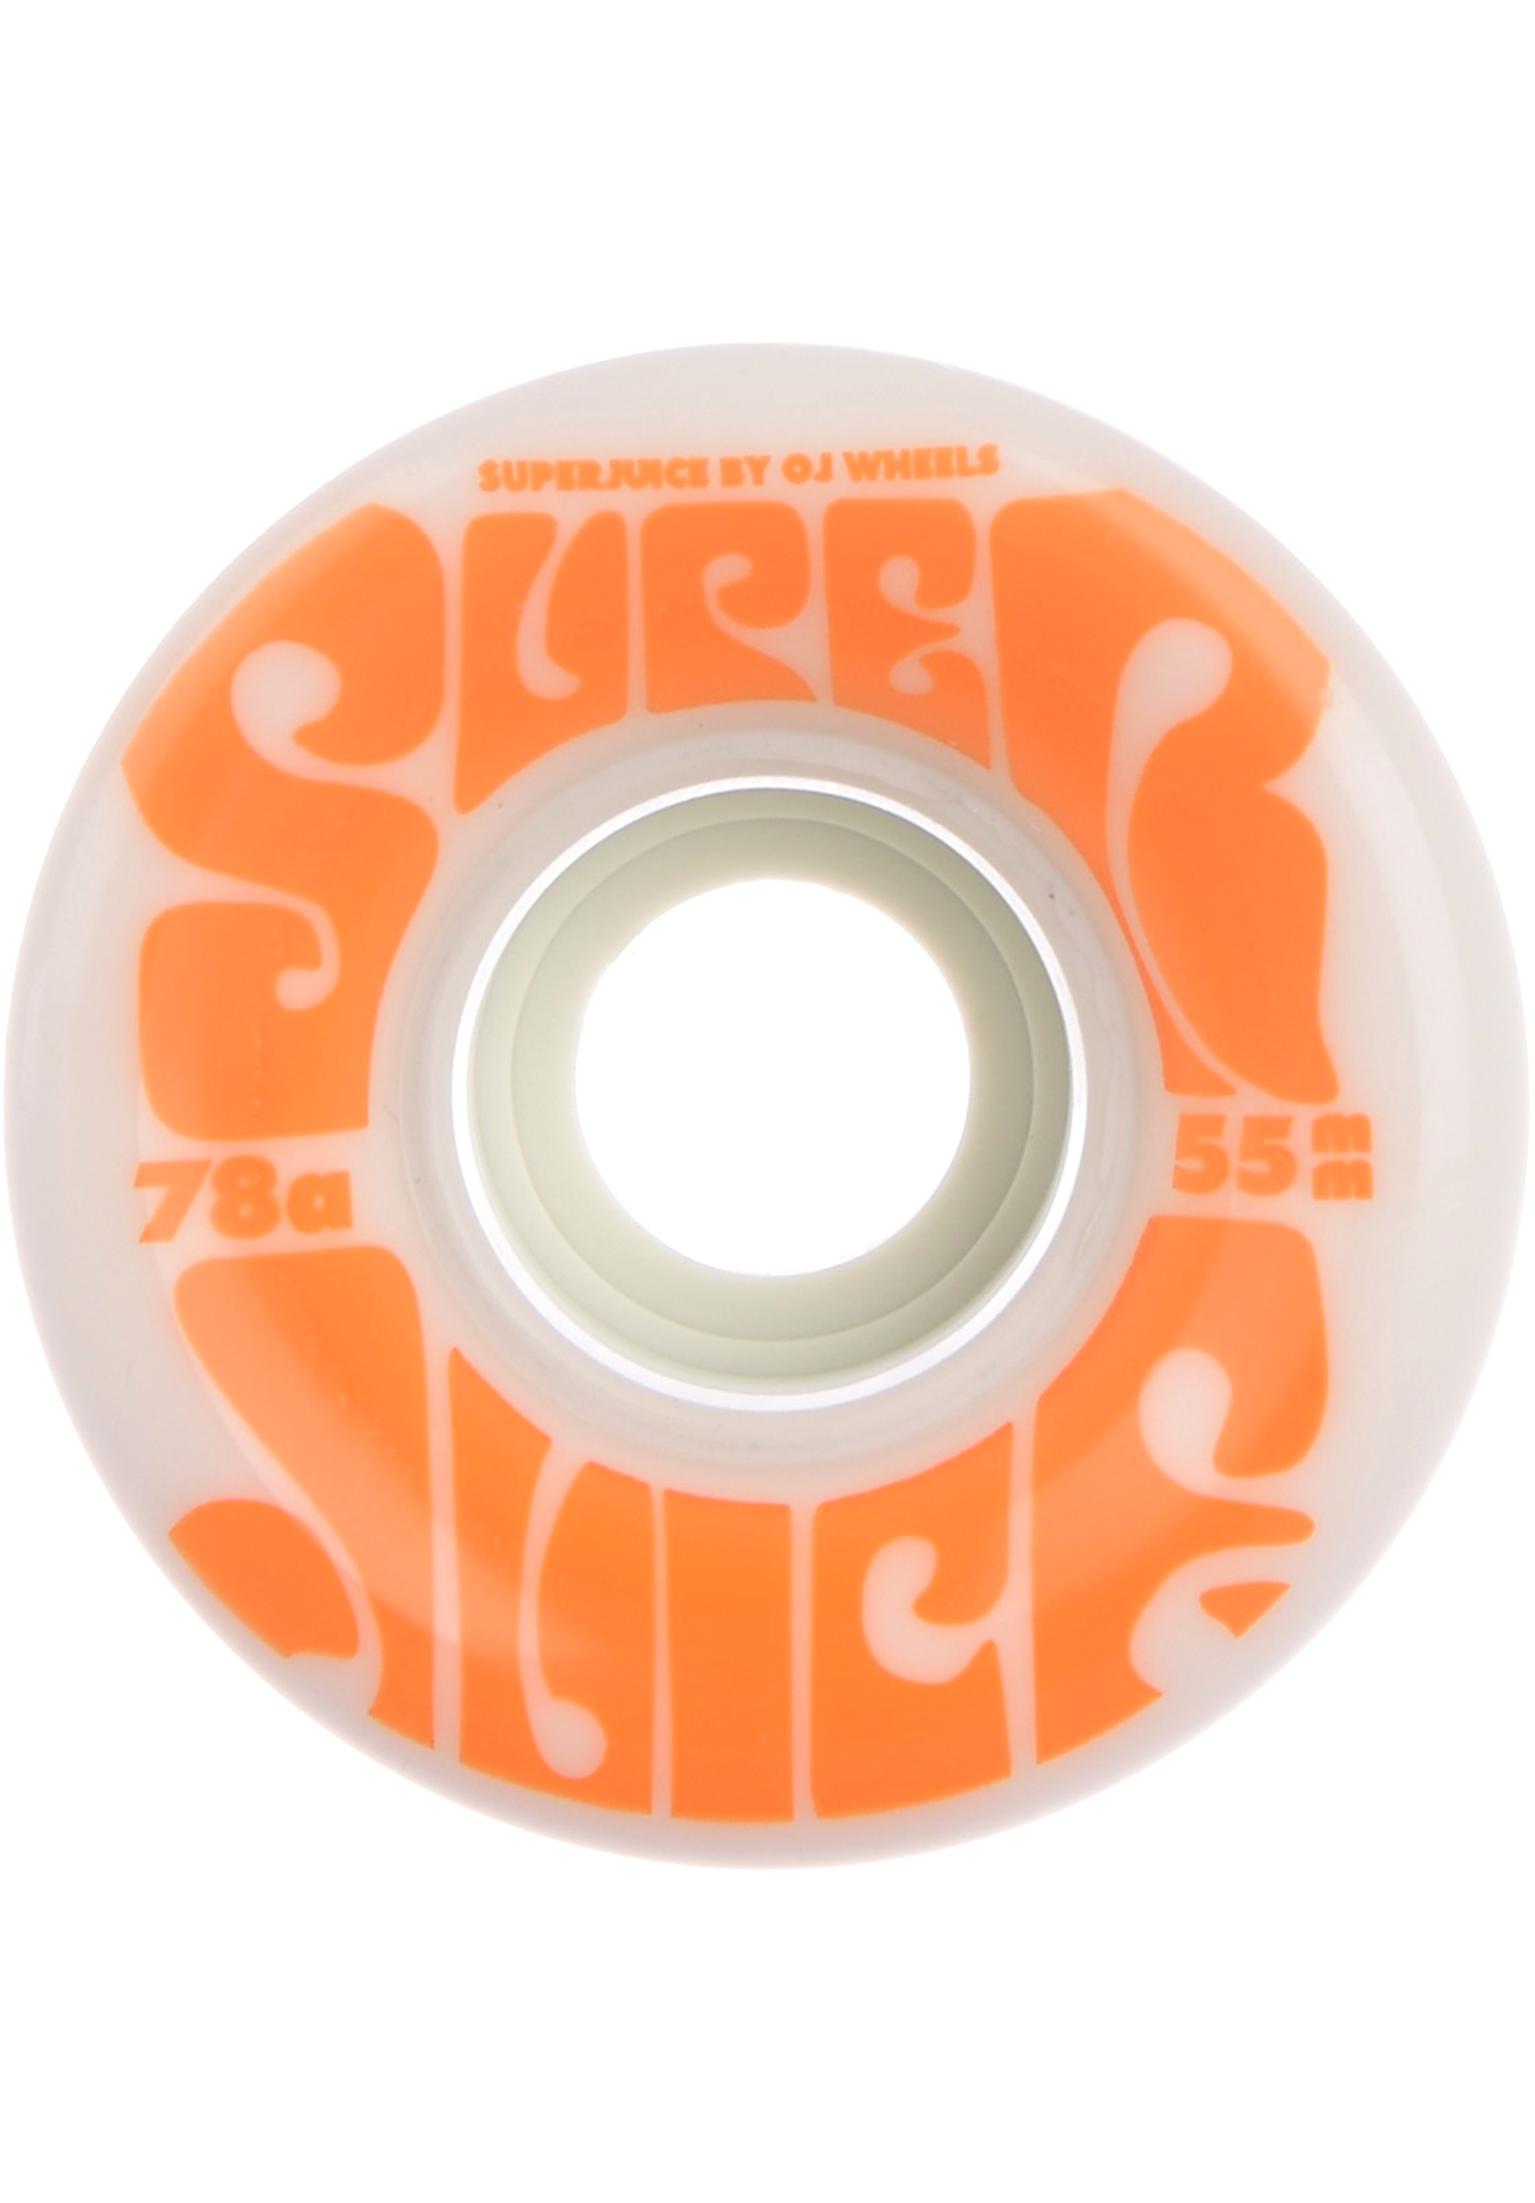 OJ Wheels 55mm Mini Super Juice 78a skateboardwielen white